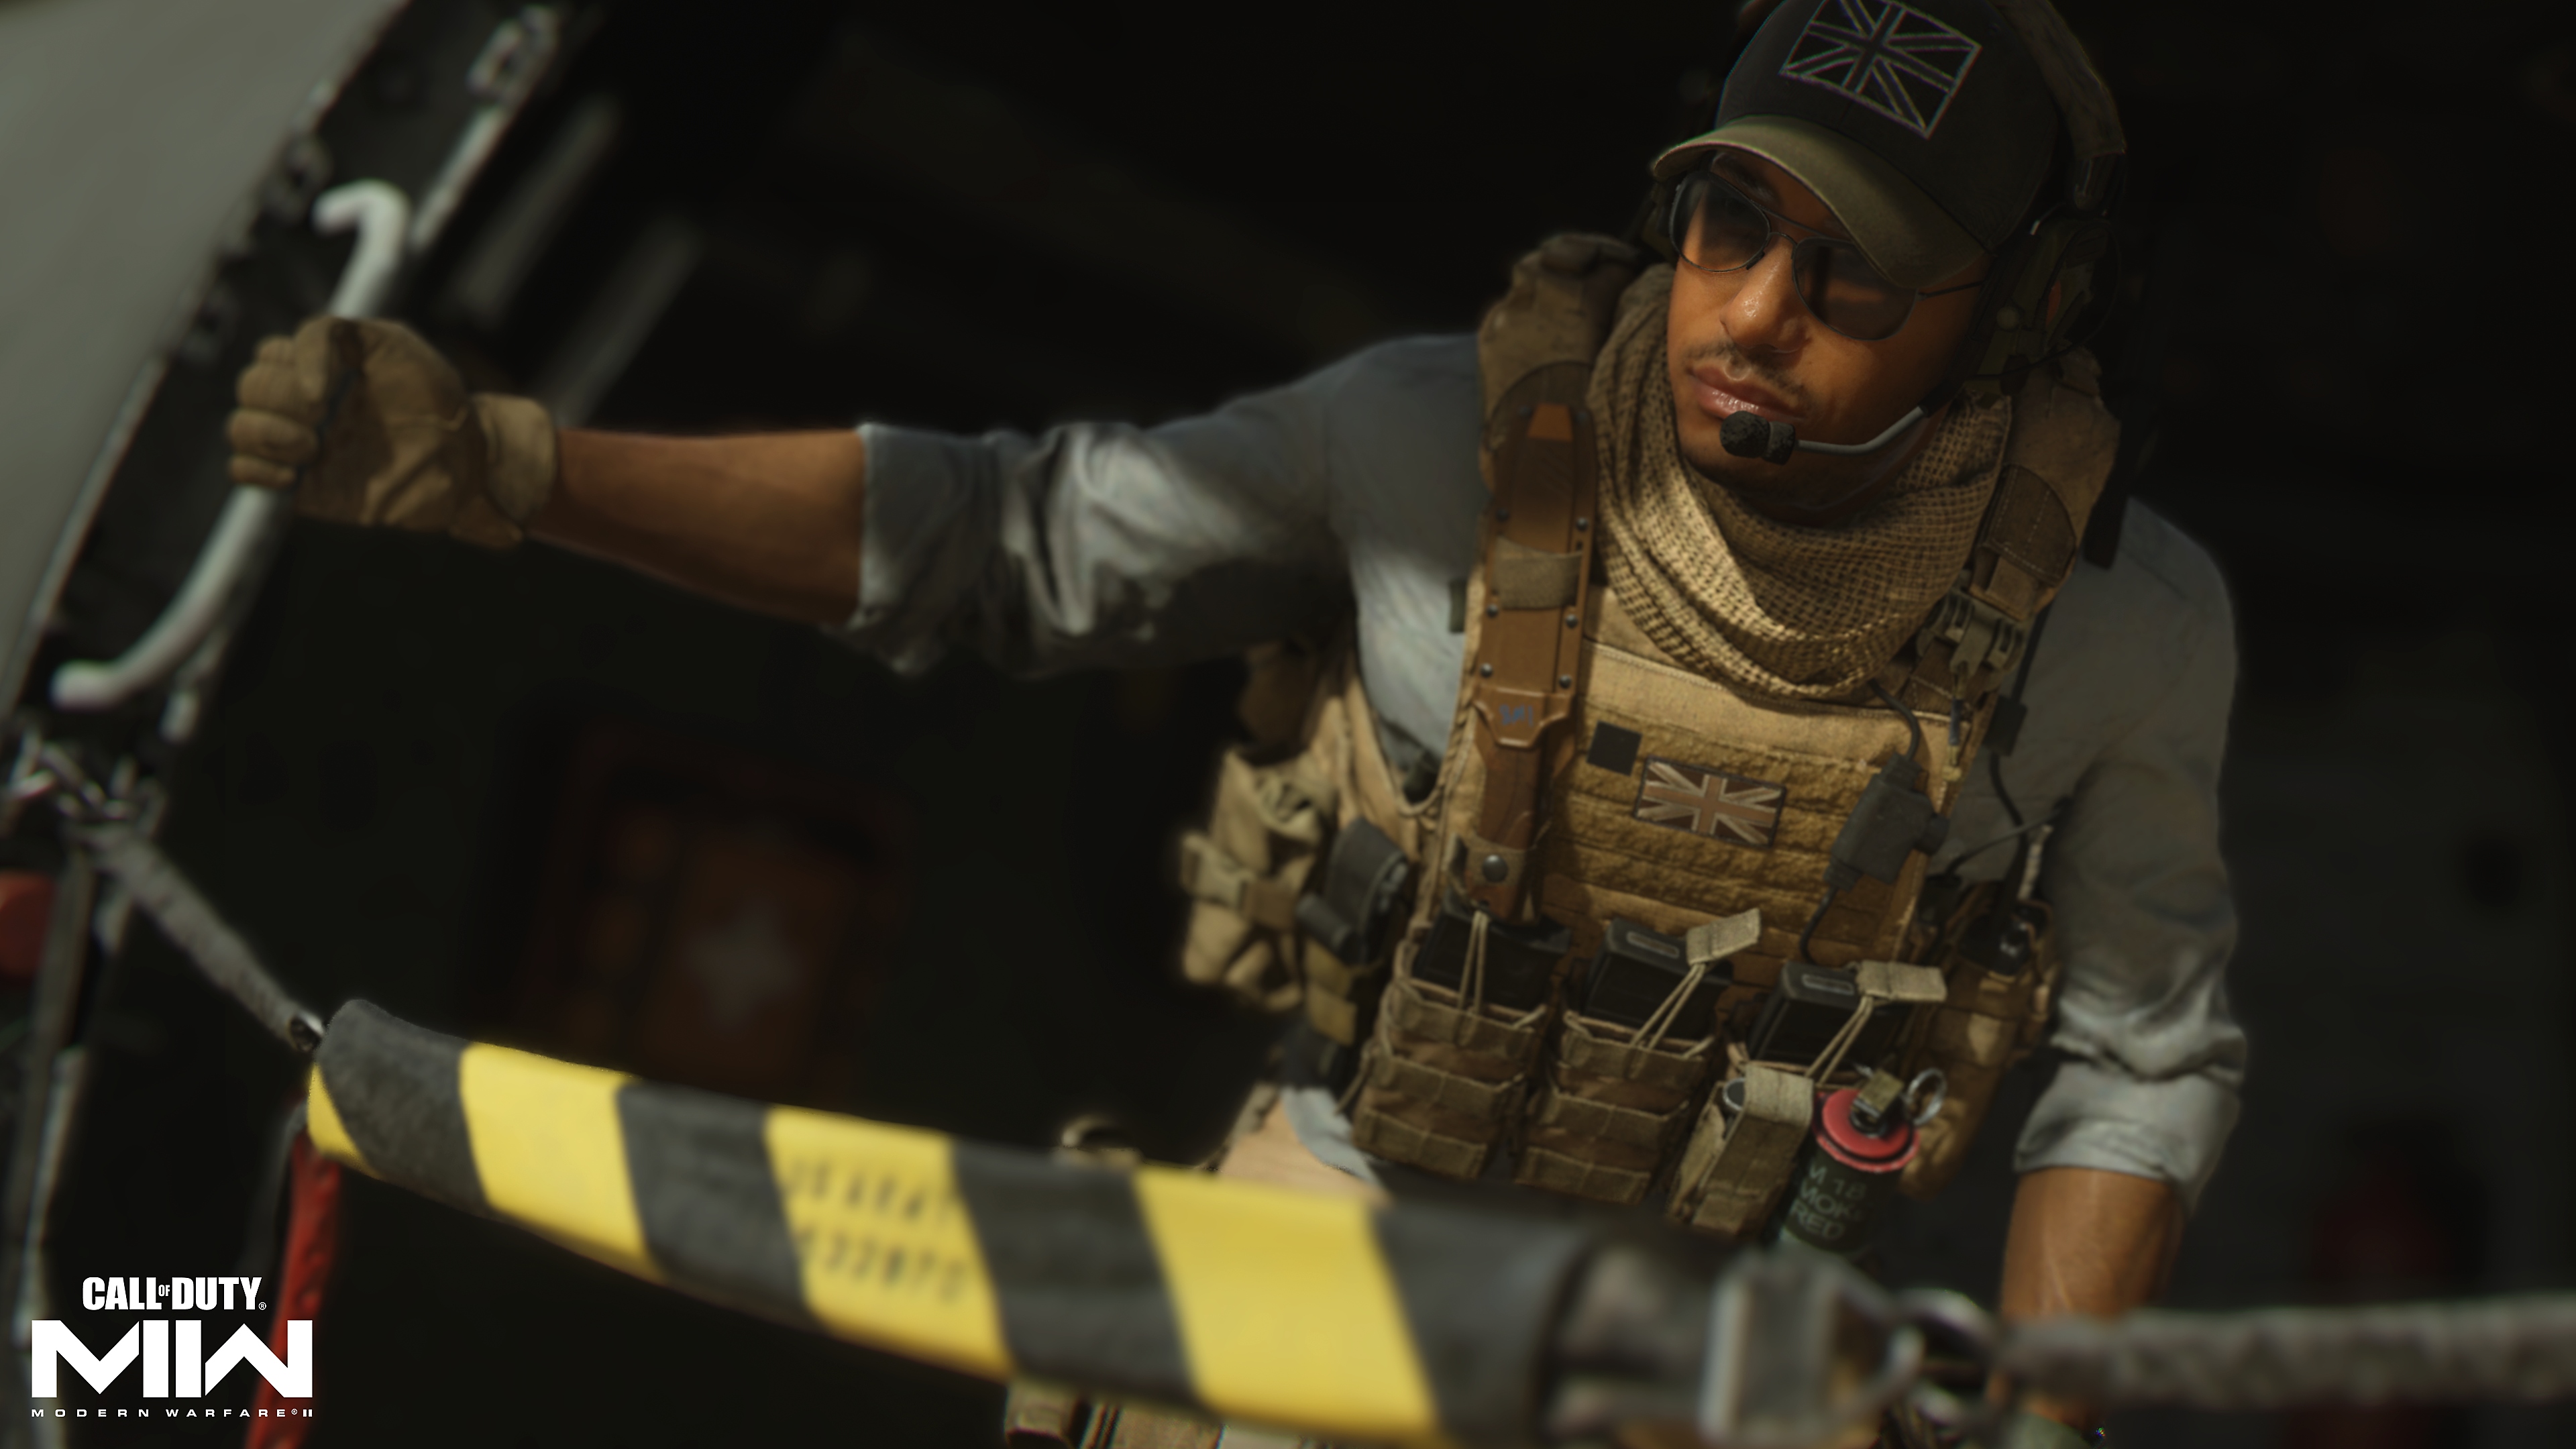 Call of Duty: Modern Warfare 2 2022 екранна снимка, показваща герой, който гледа към самолет